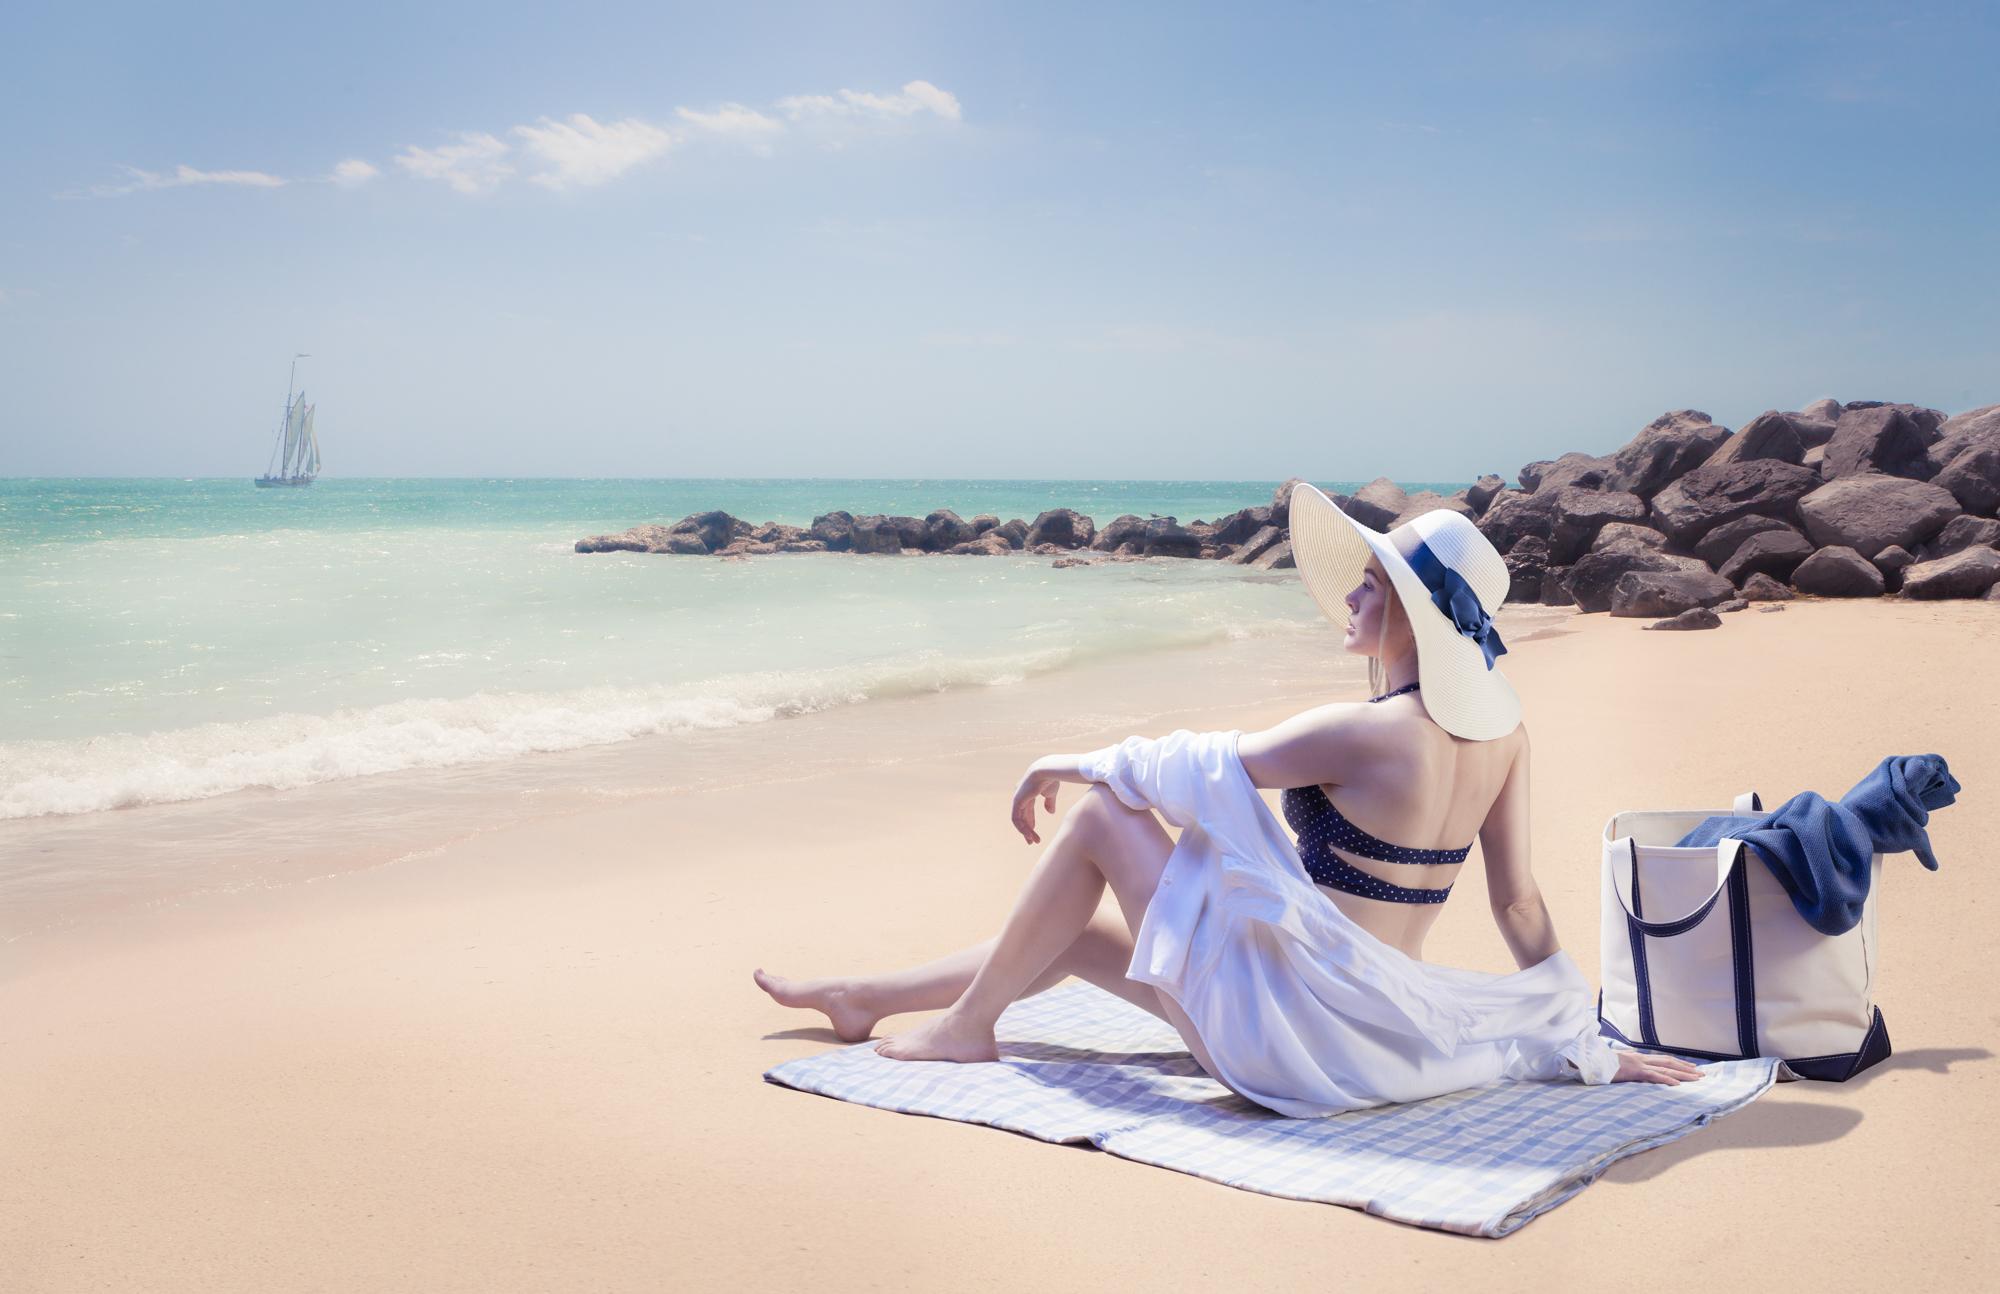 A woman sun bathes on the beach.